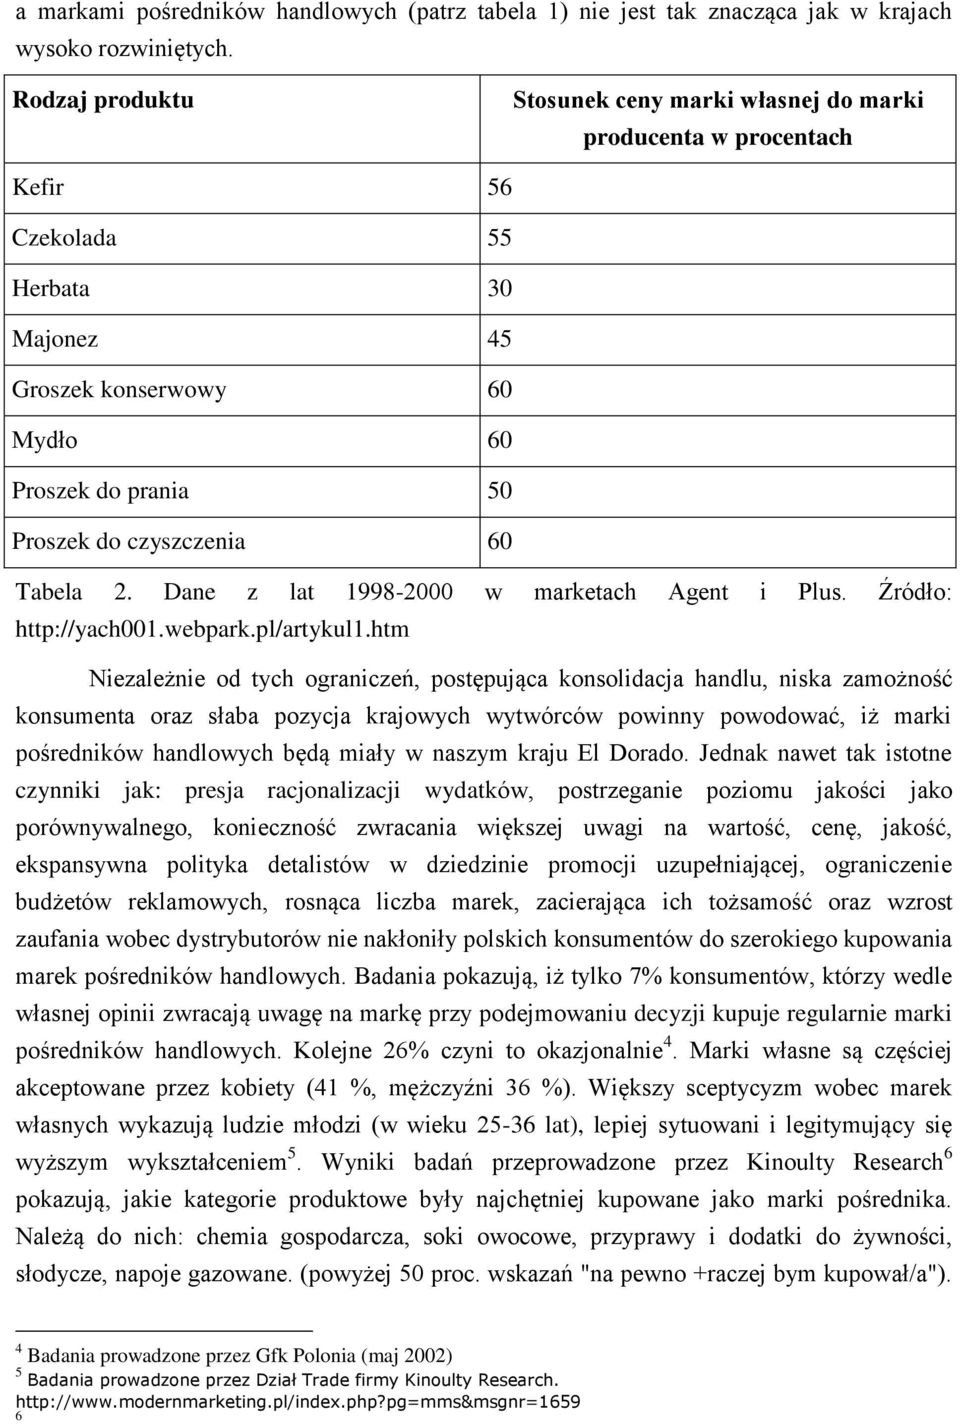 Tabela 2. Dane z lat 1998-2000 w marketach Agent i Plus. Źródło: http://yach001.webpark.pl/artykul1.